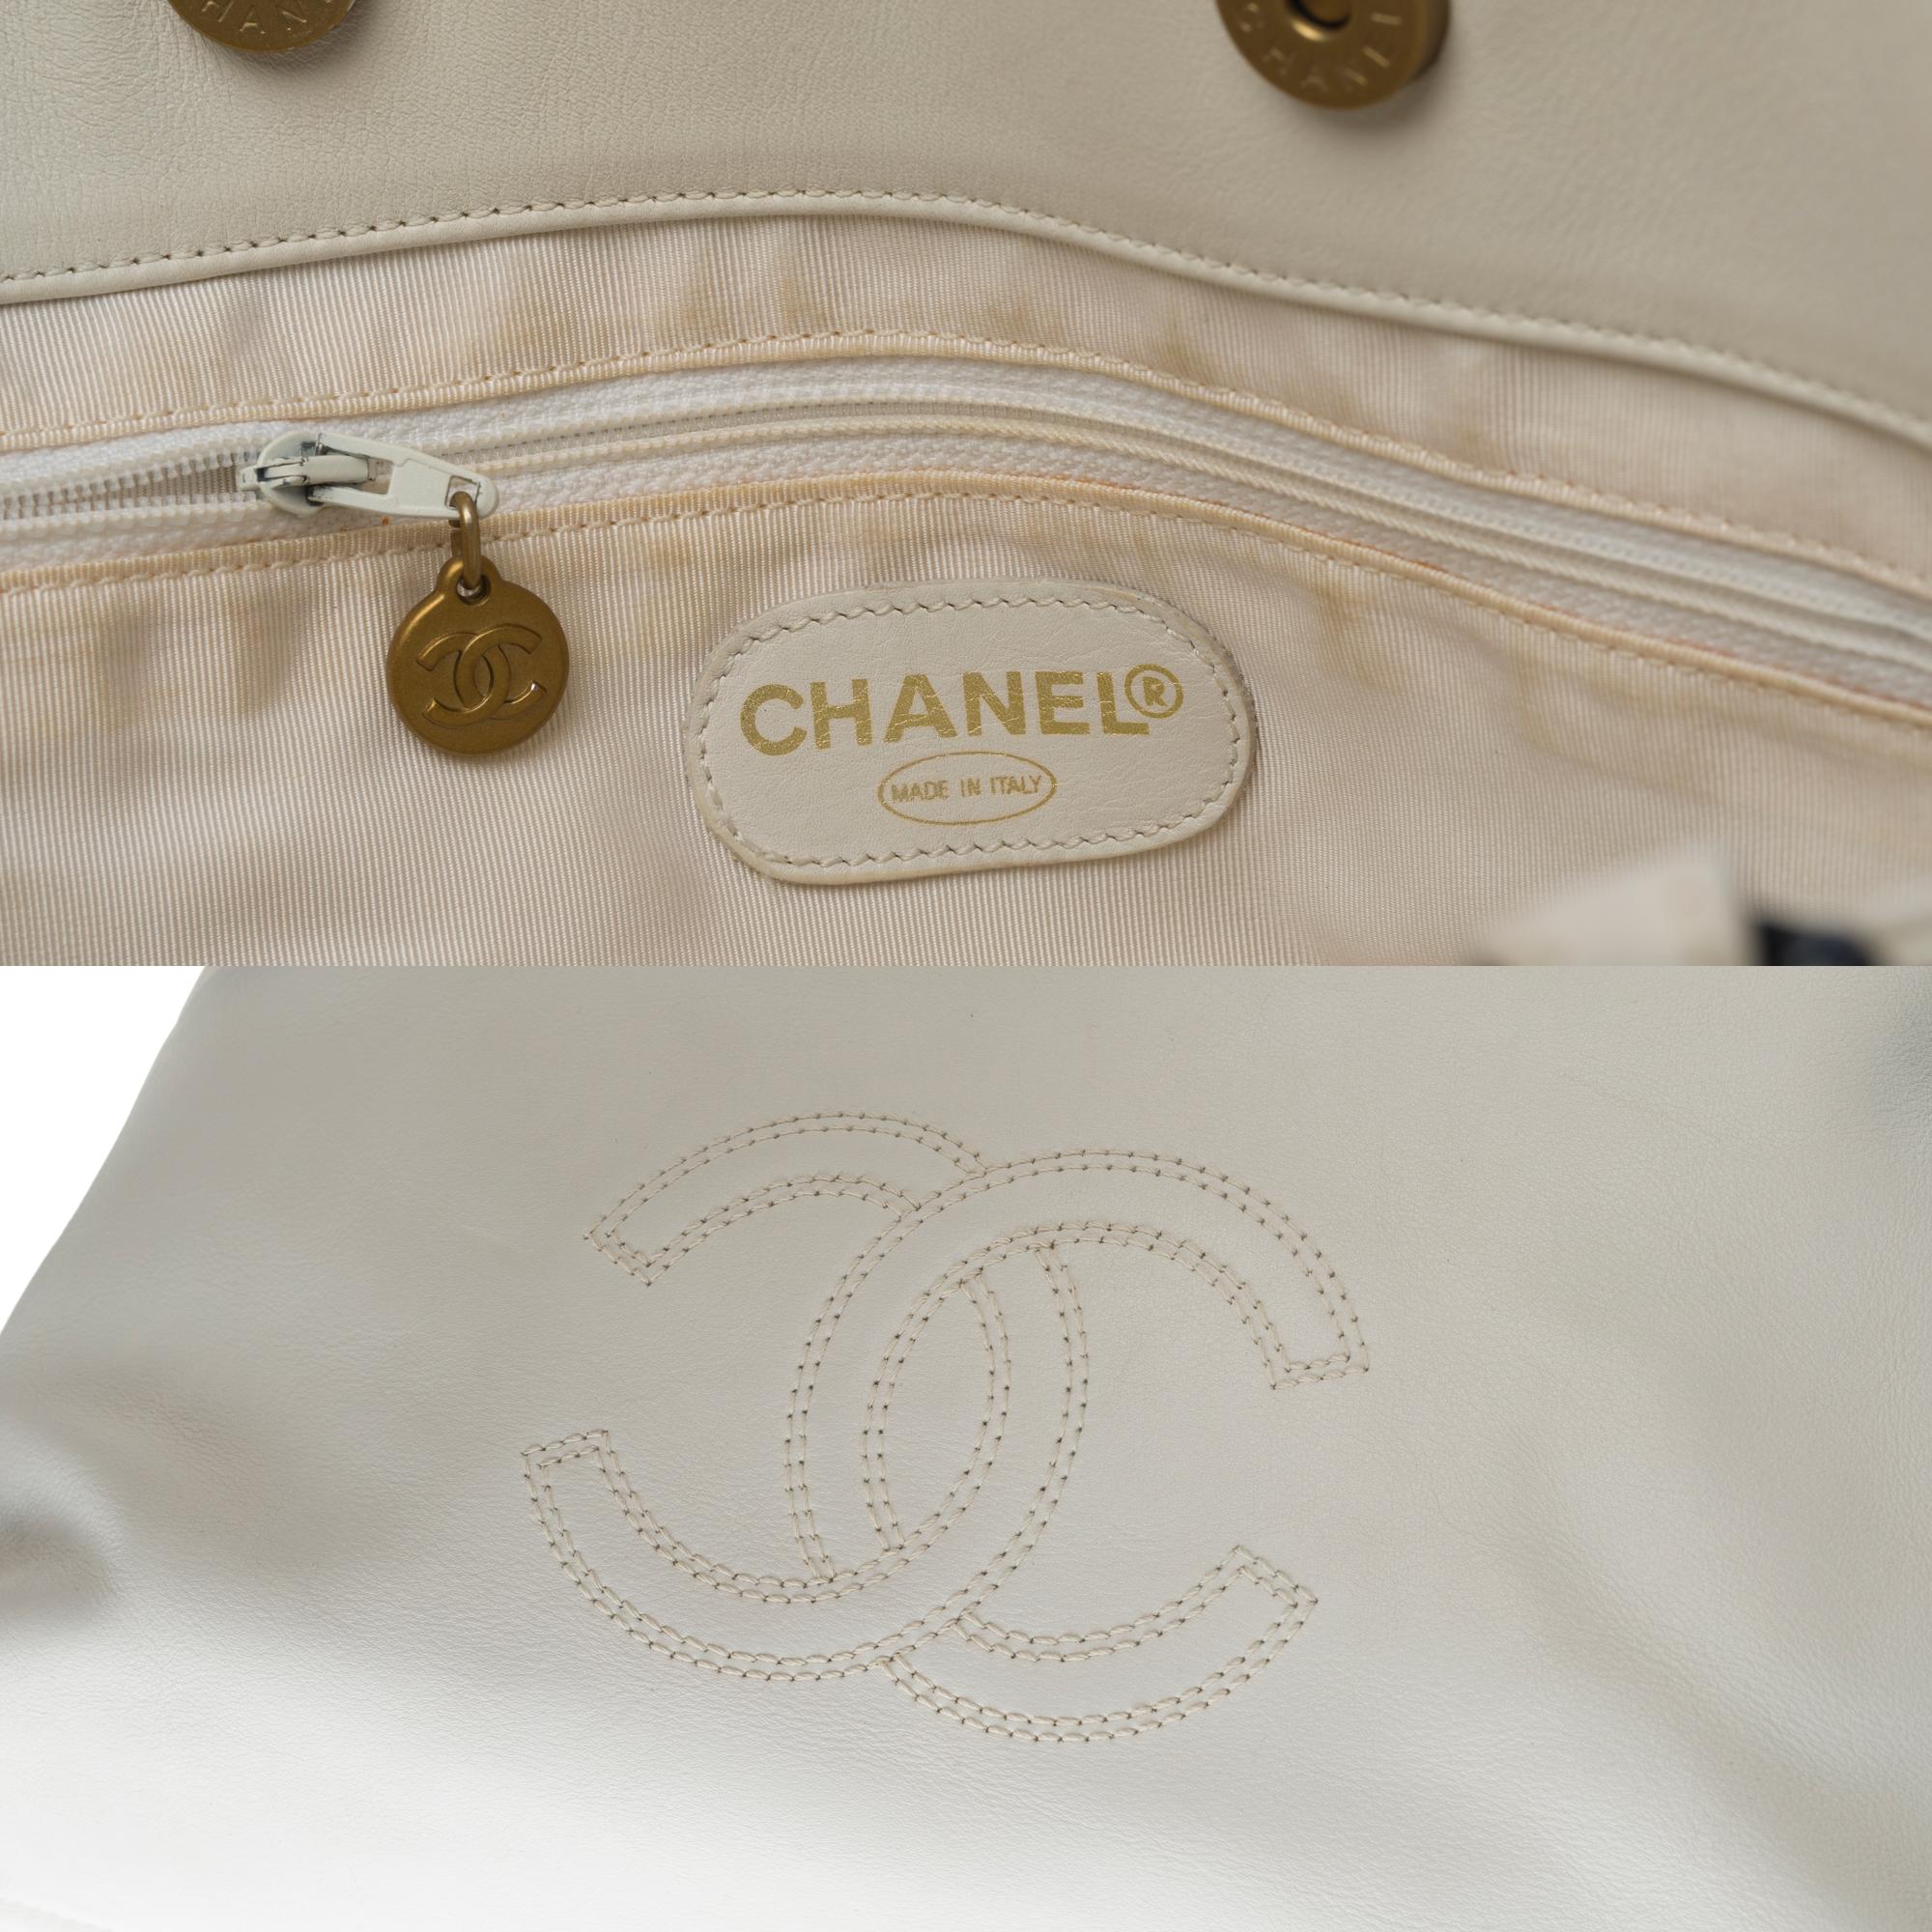 Women's Chanel Tote Bag in white lambskin